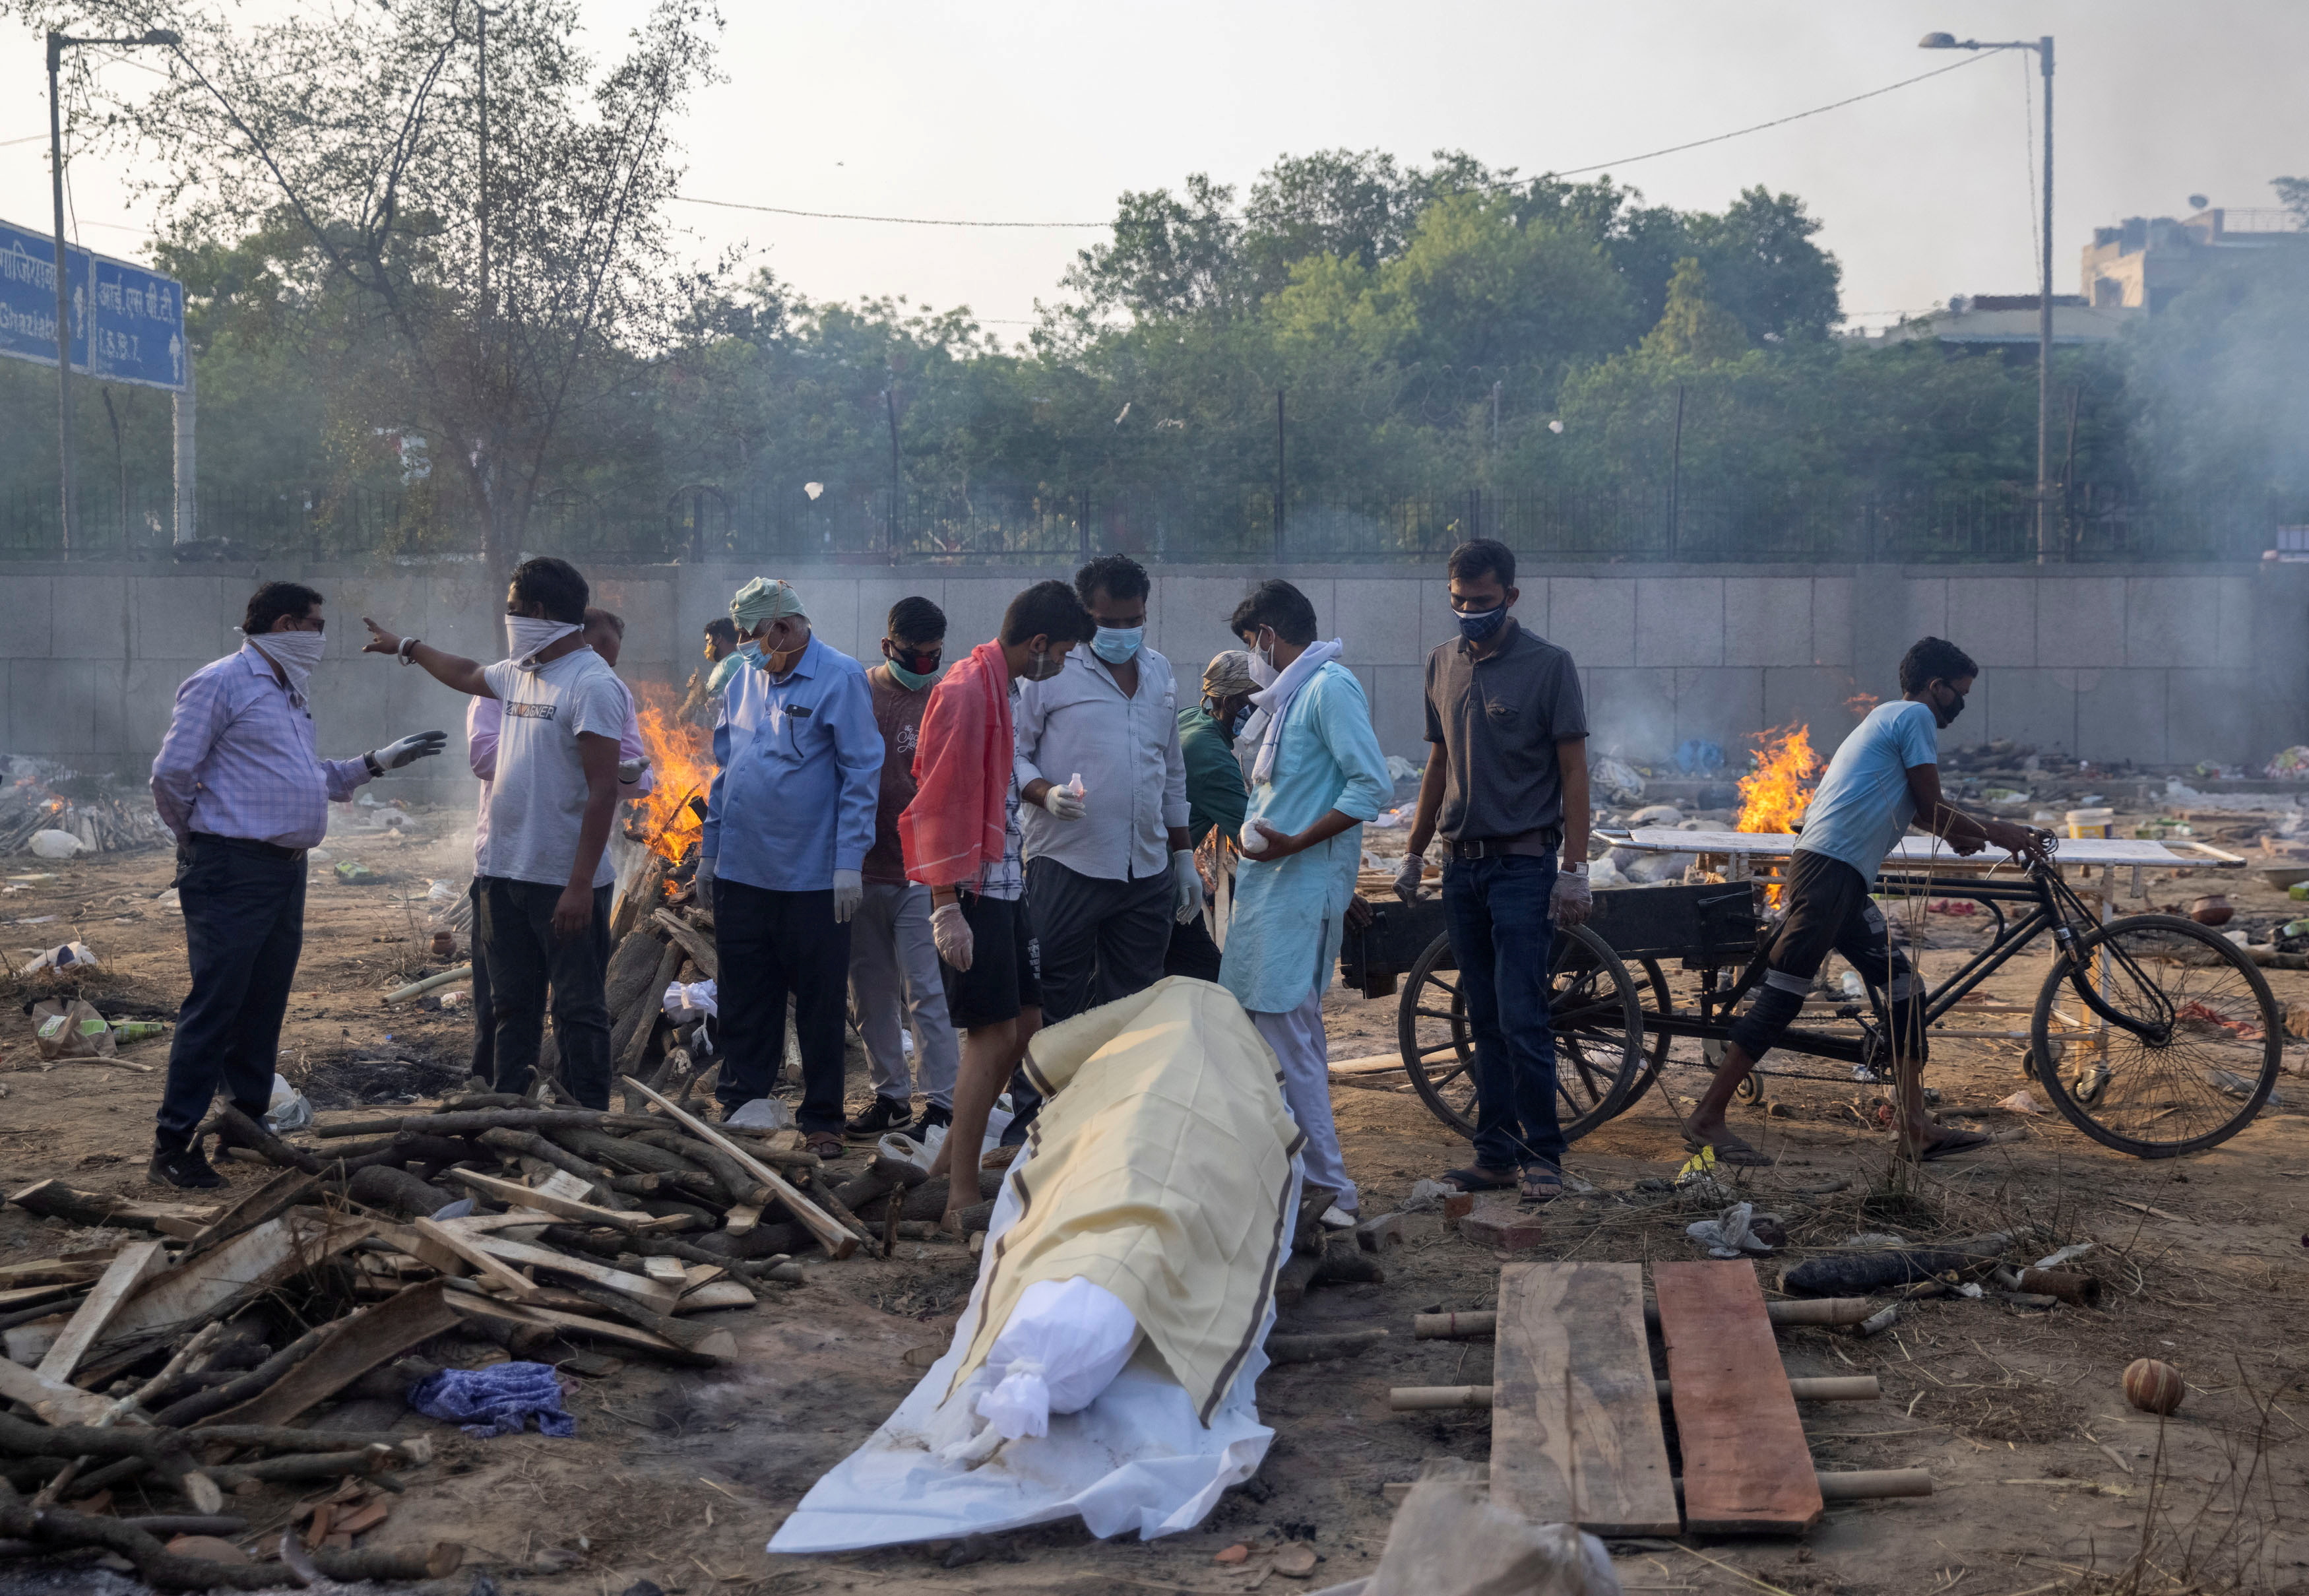 Familiares se preparan para incinerar el cuerpo de una persona que murió debido a la enfermedad del COVID-19 en un crematorio en Nueva Delhi, India (Reuters)